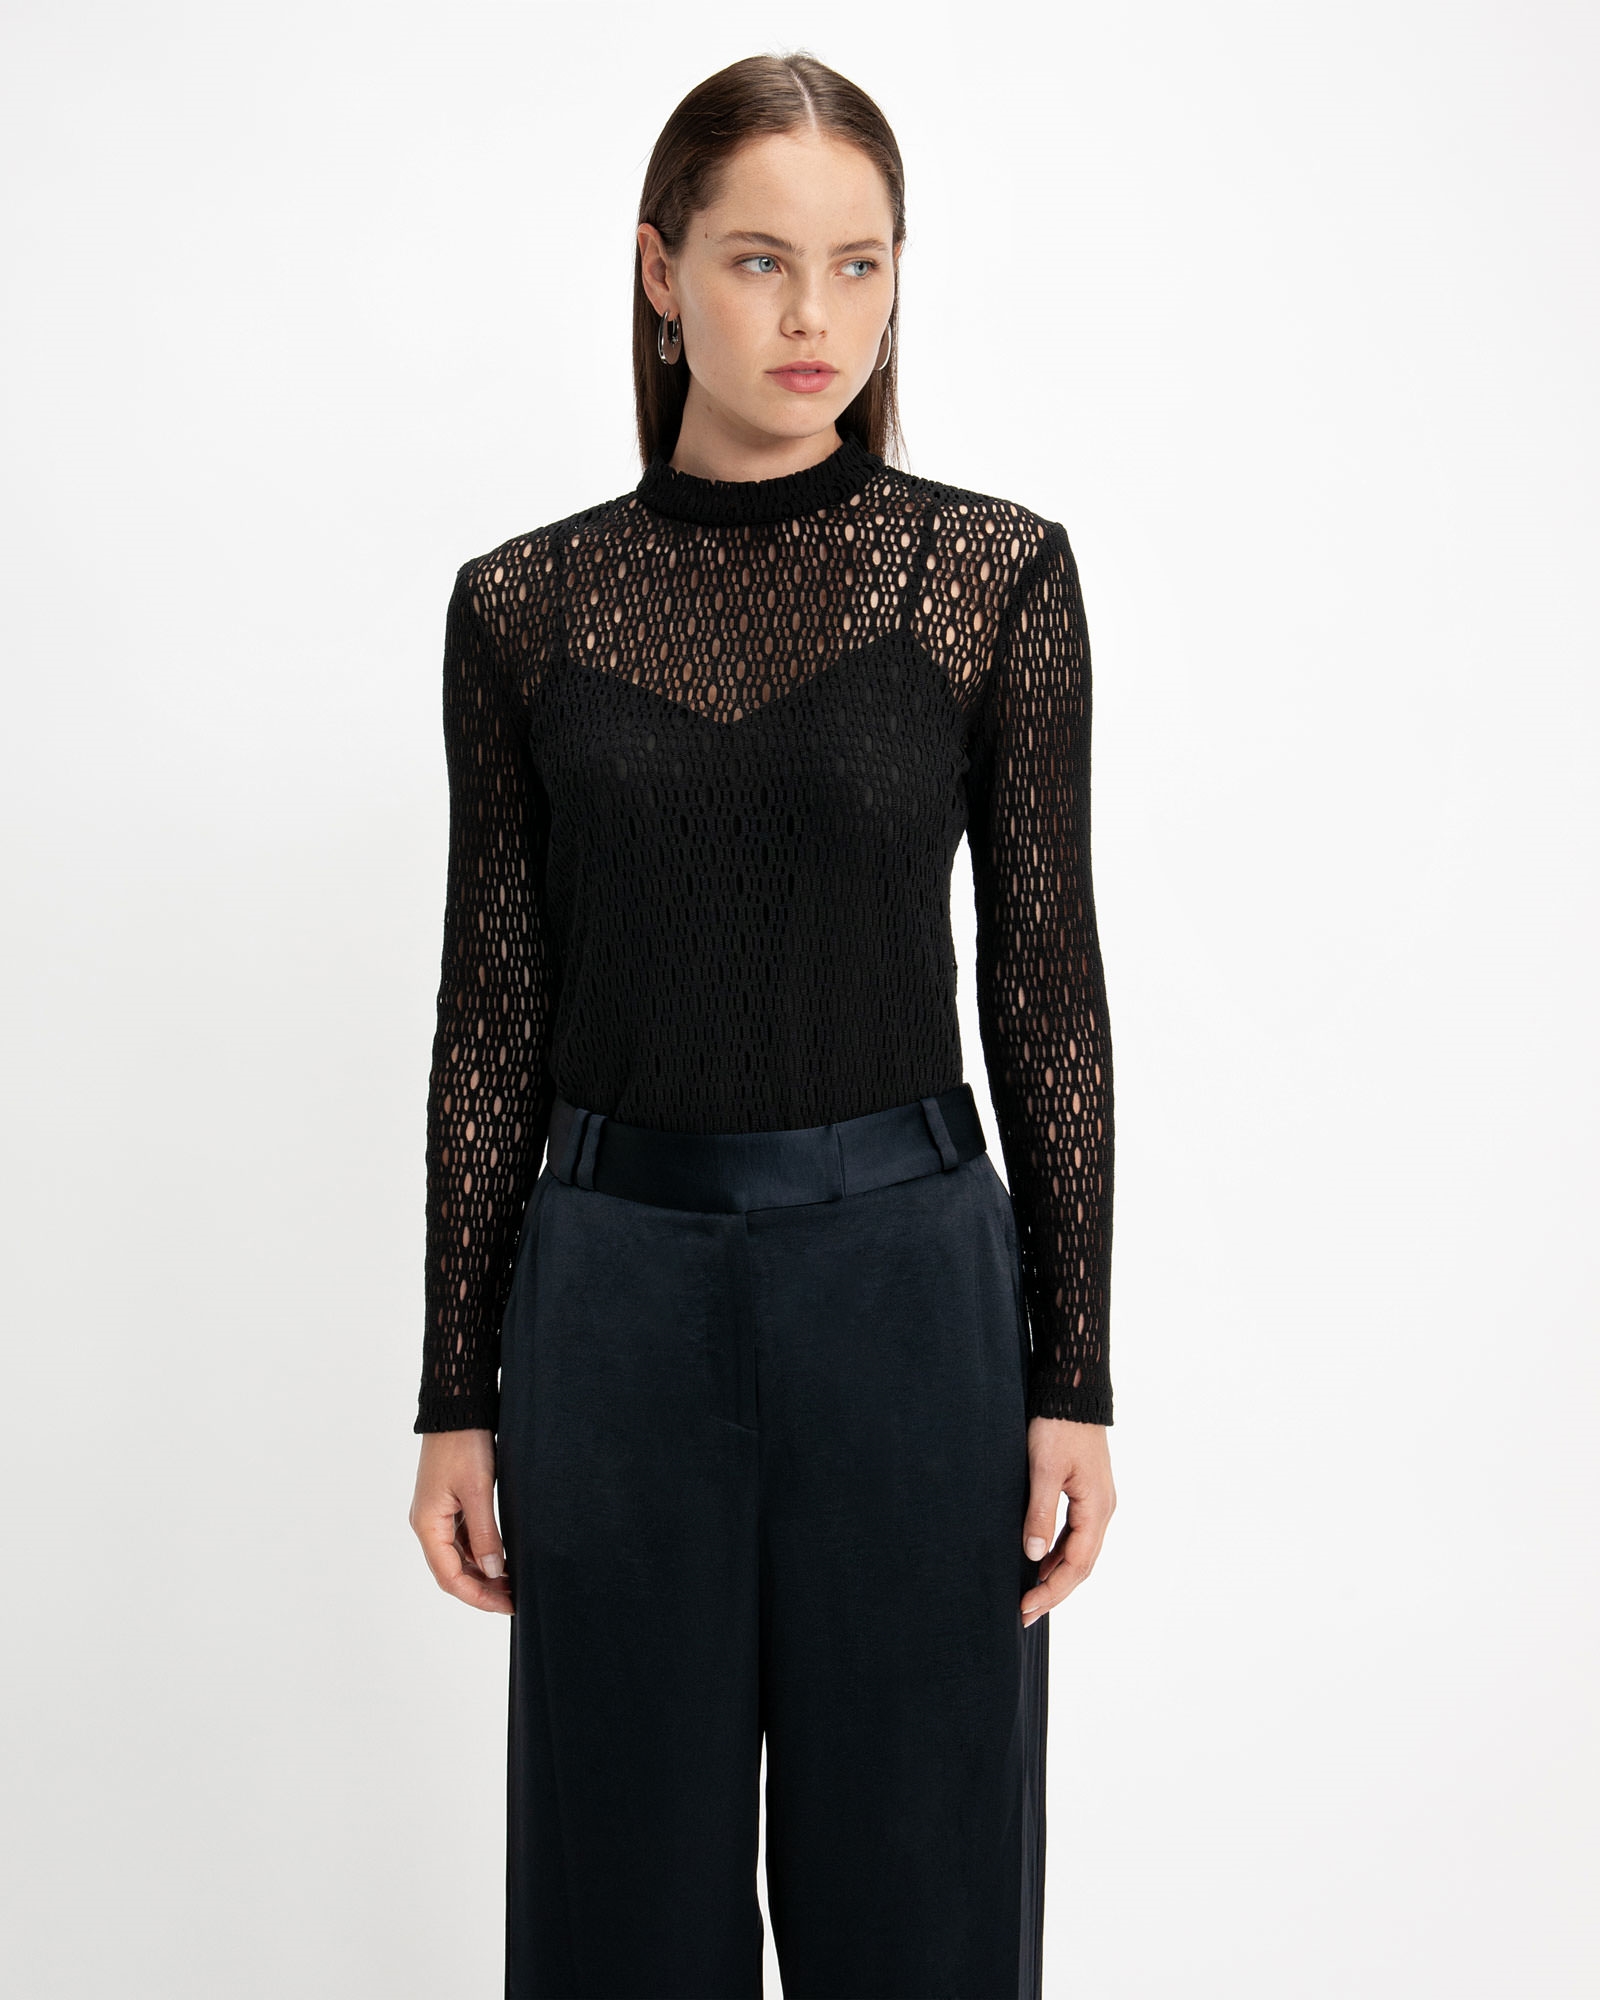 Crochet Mesh Top | Buy Tops & Shirts Online - Cue